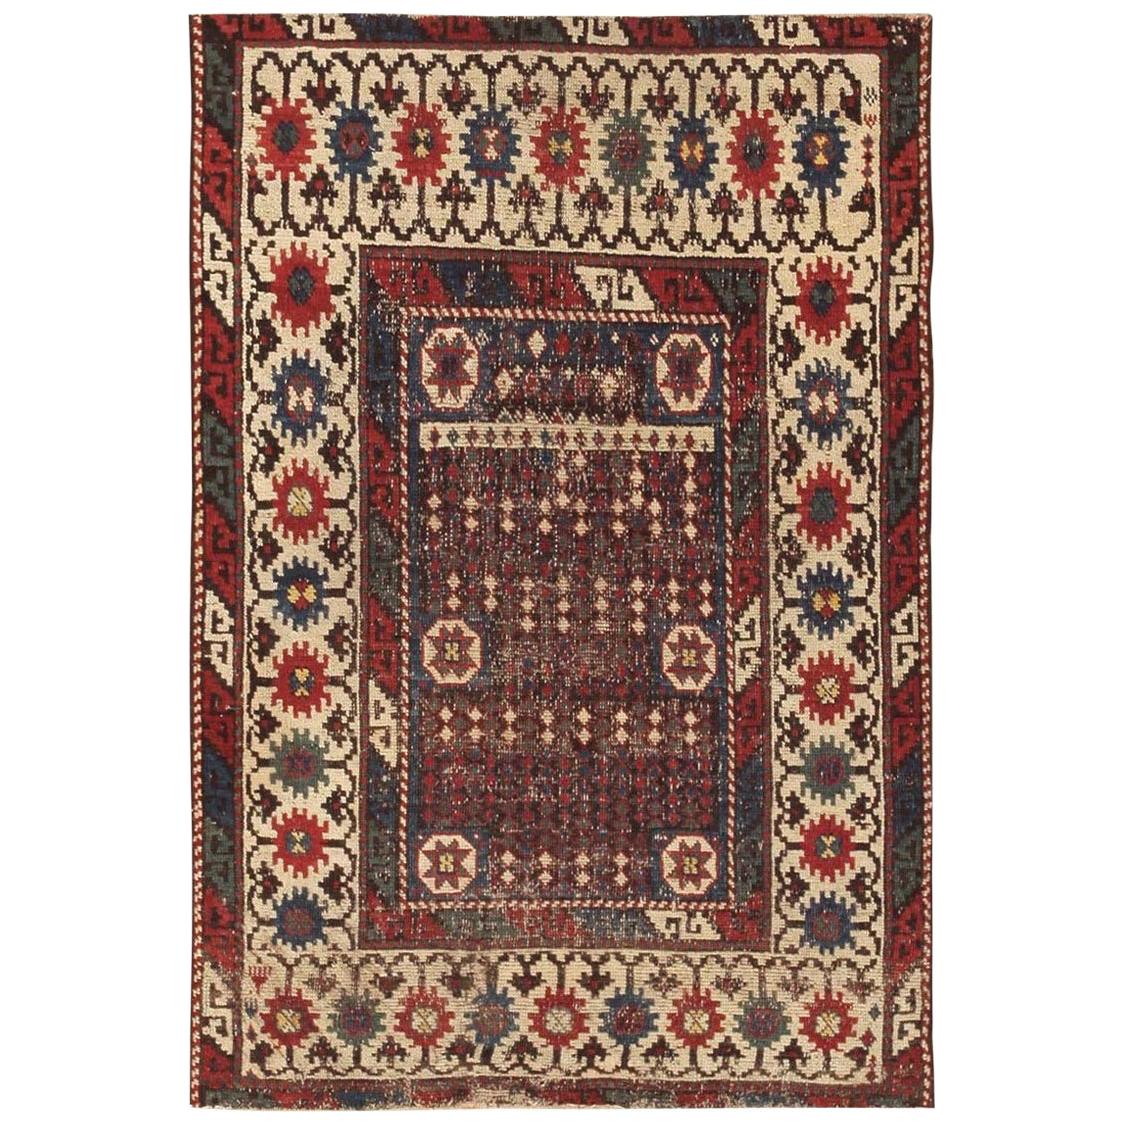 Antiker kaukasischer Avar-Teppich. Größe: 2' 7" x 3' 10"